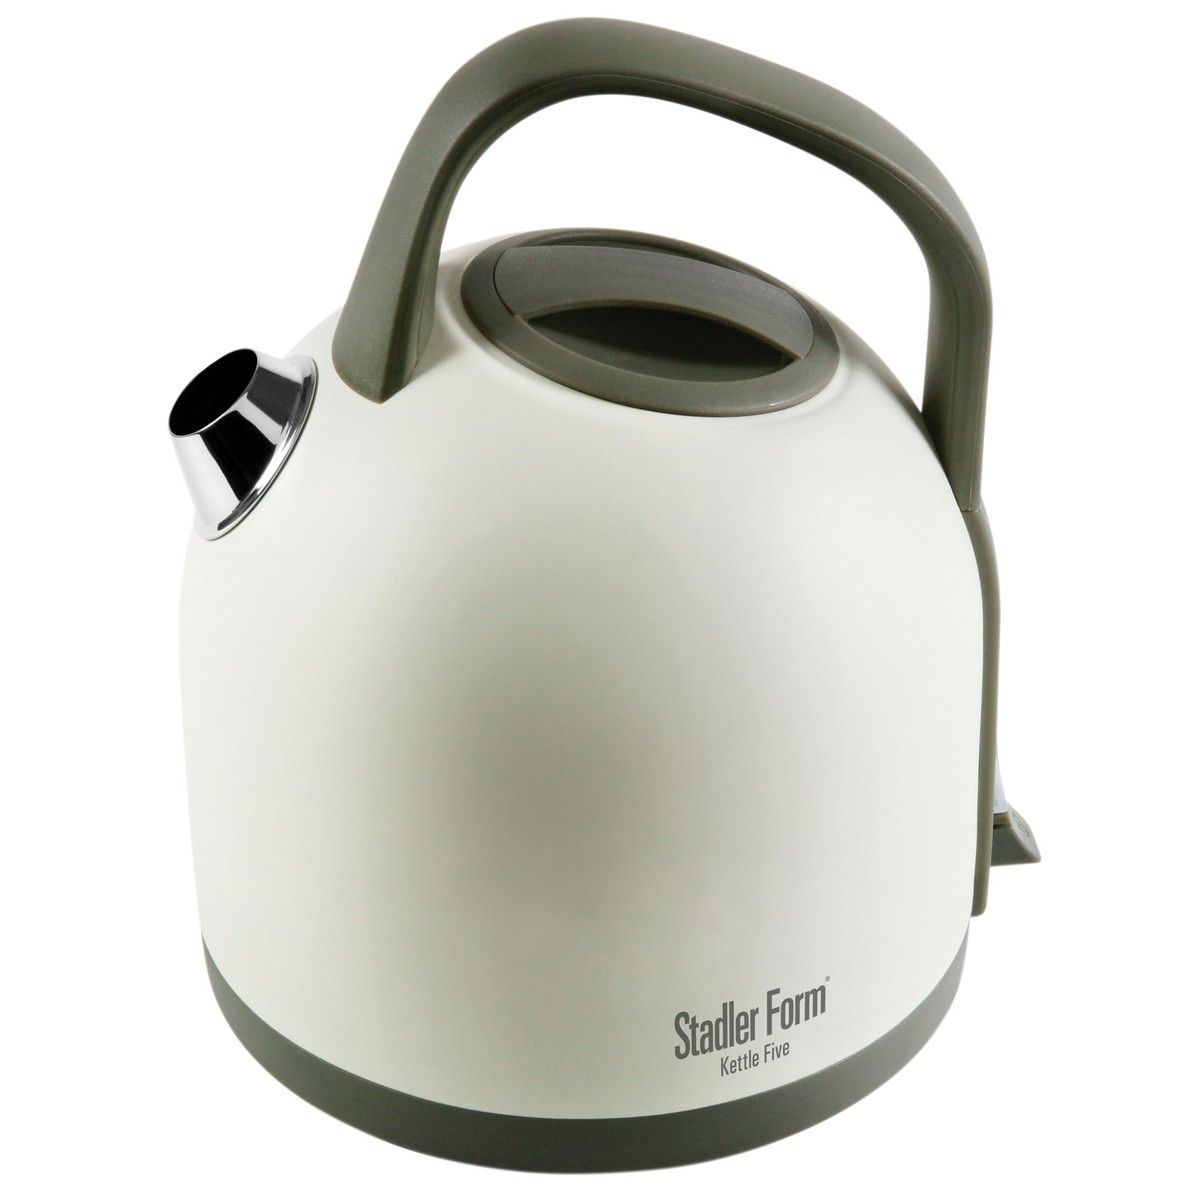 Купить чайник электрический в минске. Чайник Stadler form kettle Five SFK.8800. Чайник kettle Five от Stadler form. Stadler form чайник 8000. Электрический чайник sqw639, белый.